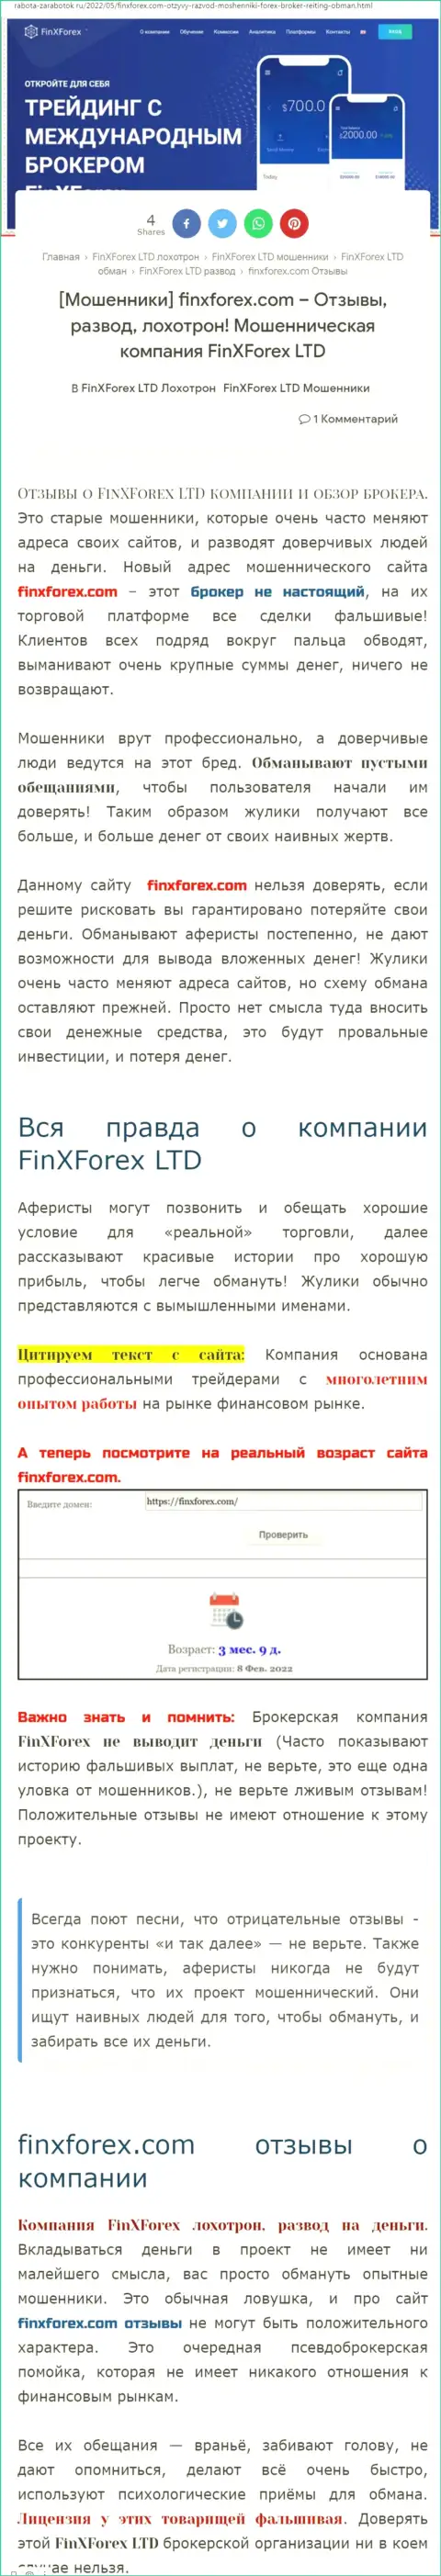 Автор обзора о FinXForex заявляет, что в FinXForex жульничают